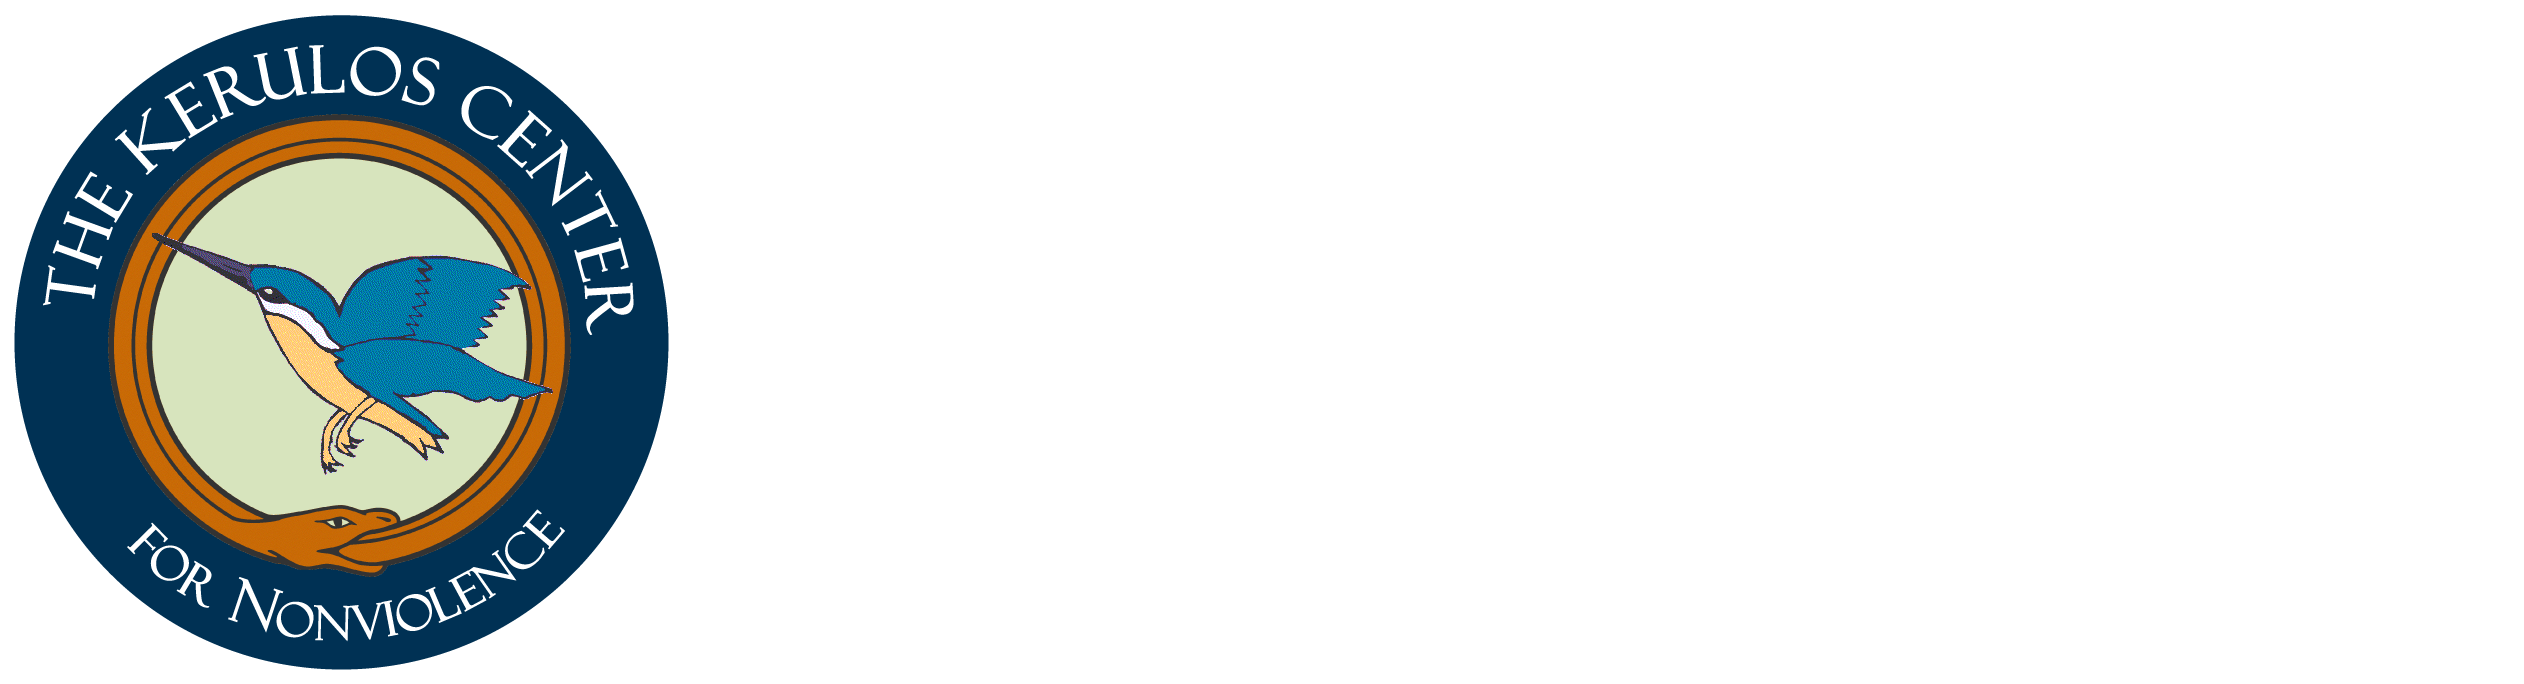 The Kerulos Center for Nonviolence